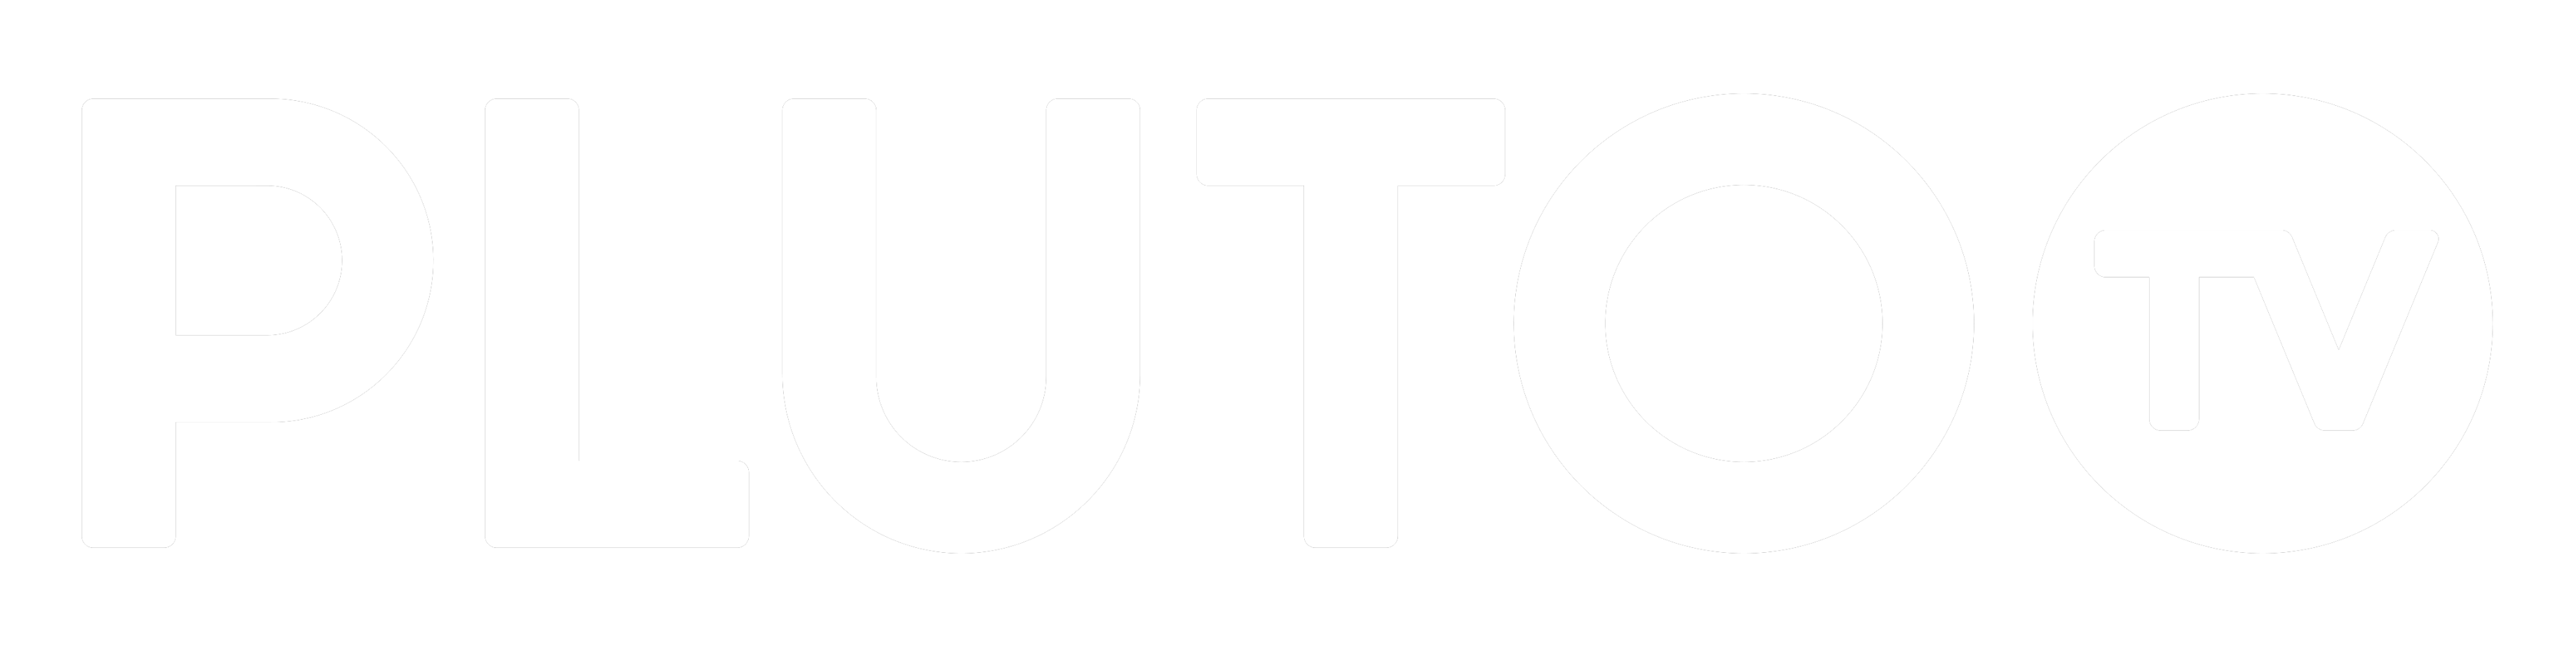 Chrome TV Logo - Chrome Web App – Pluto TV Support